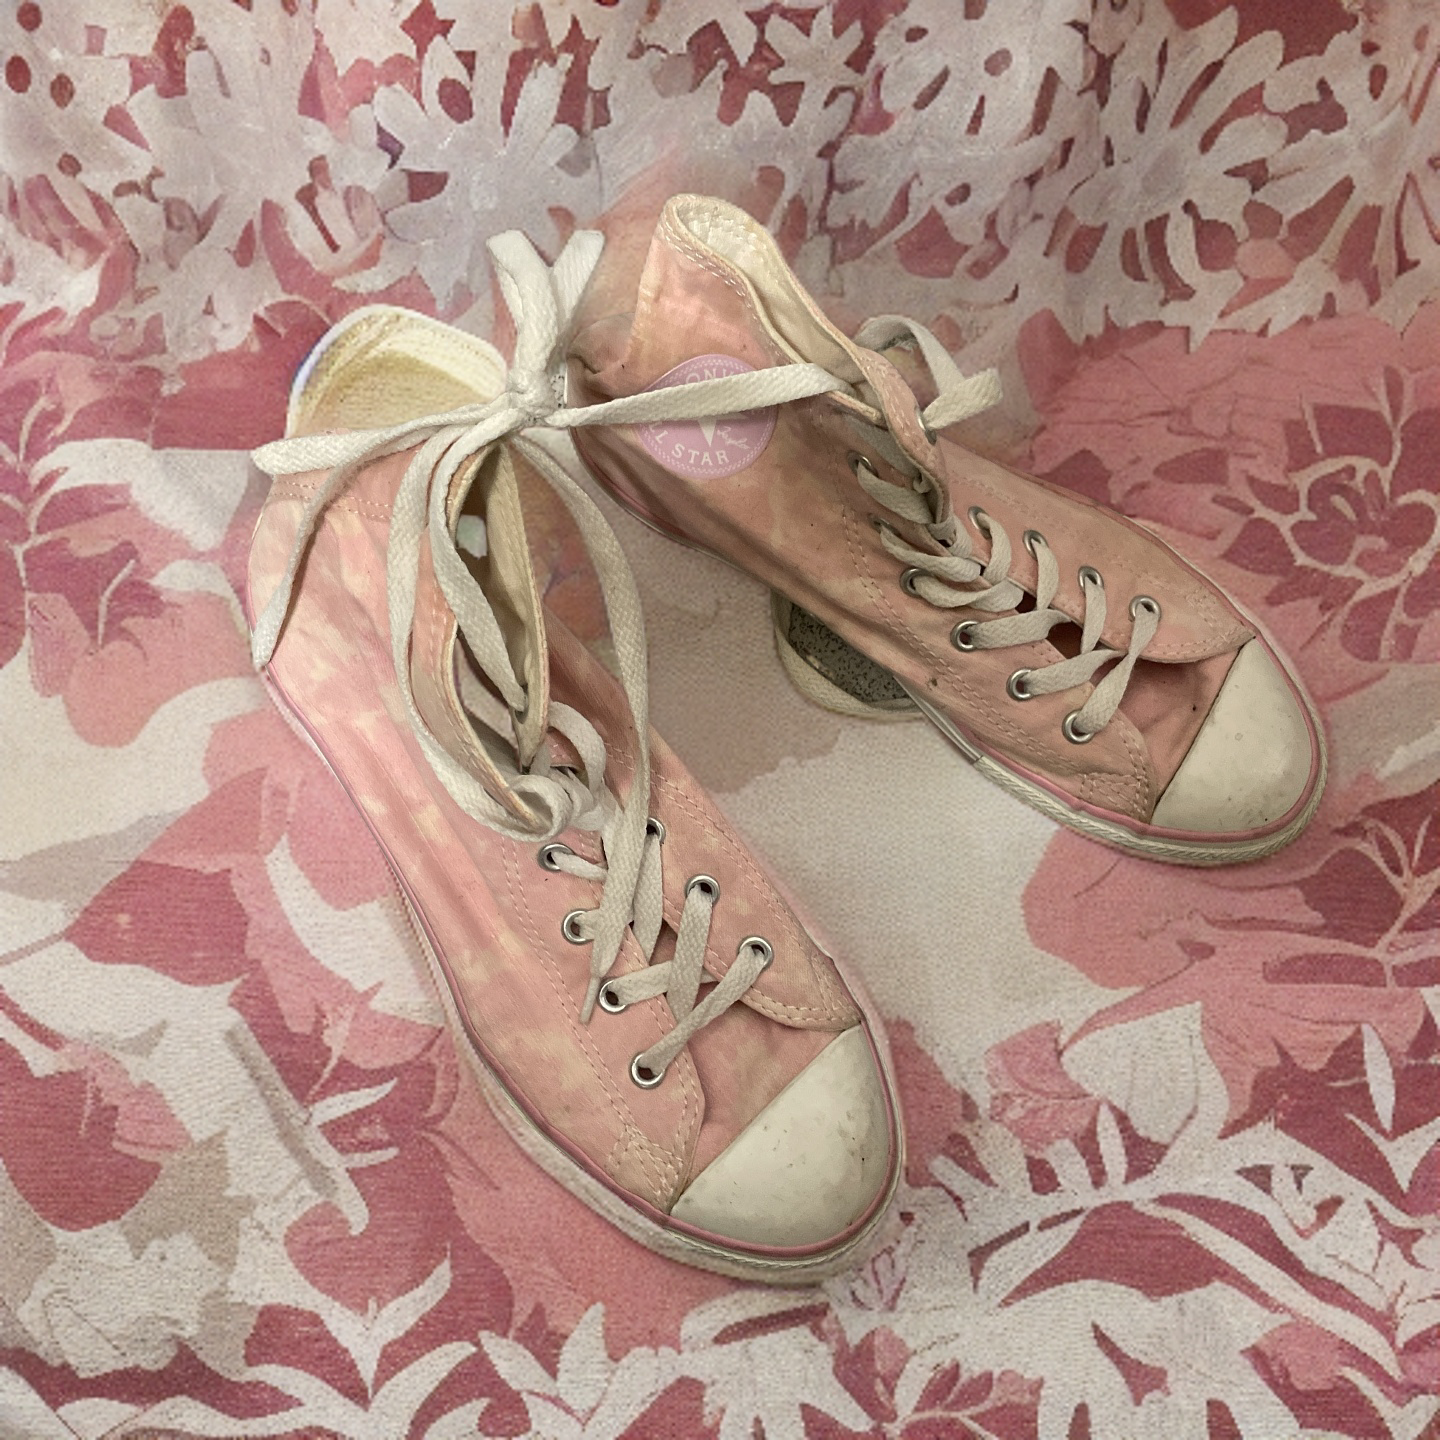 Rubynee Vintage y2k pink converse high trainer sneaker